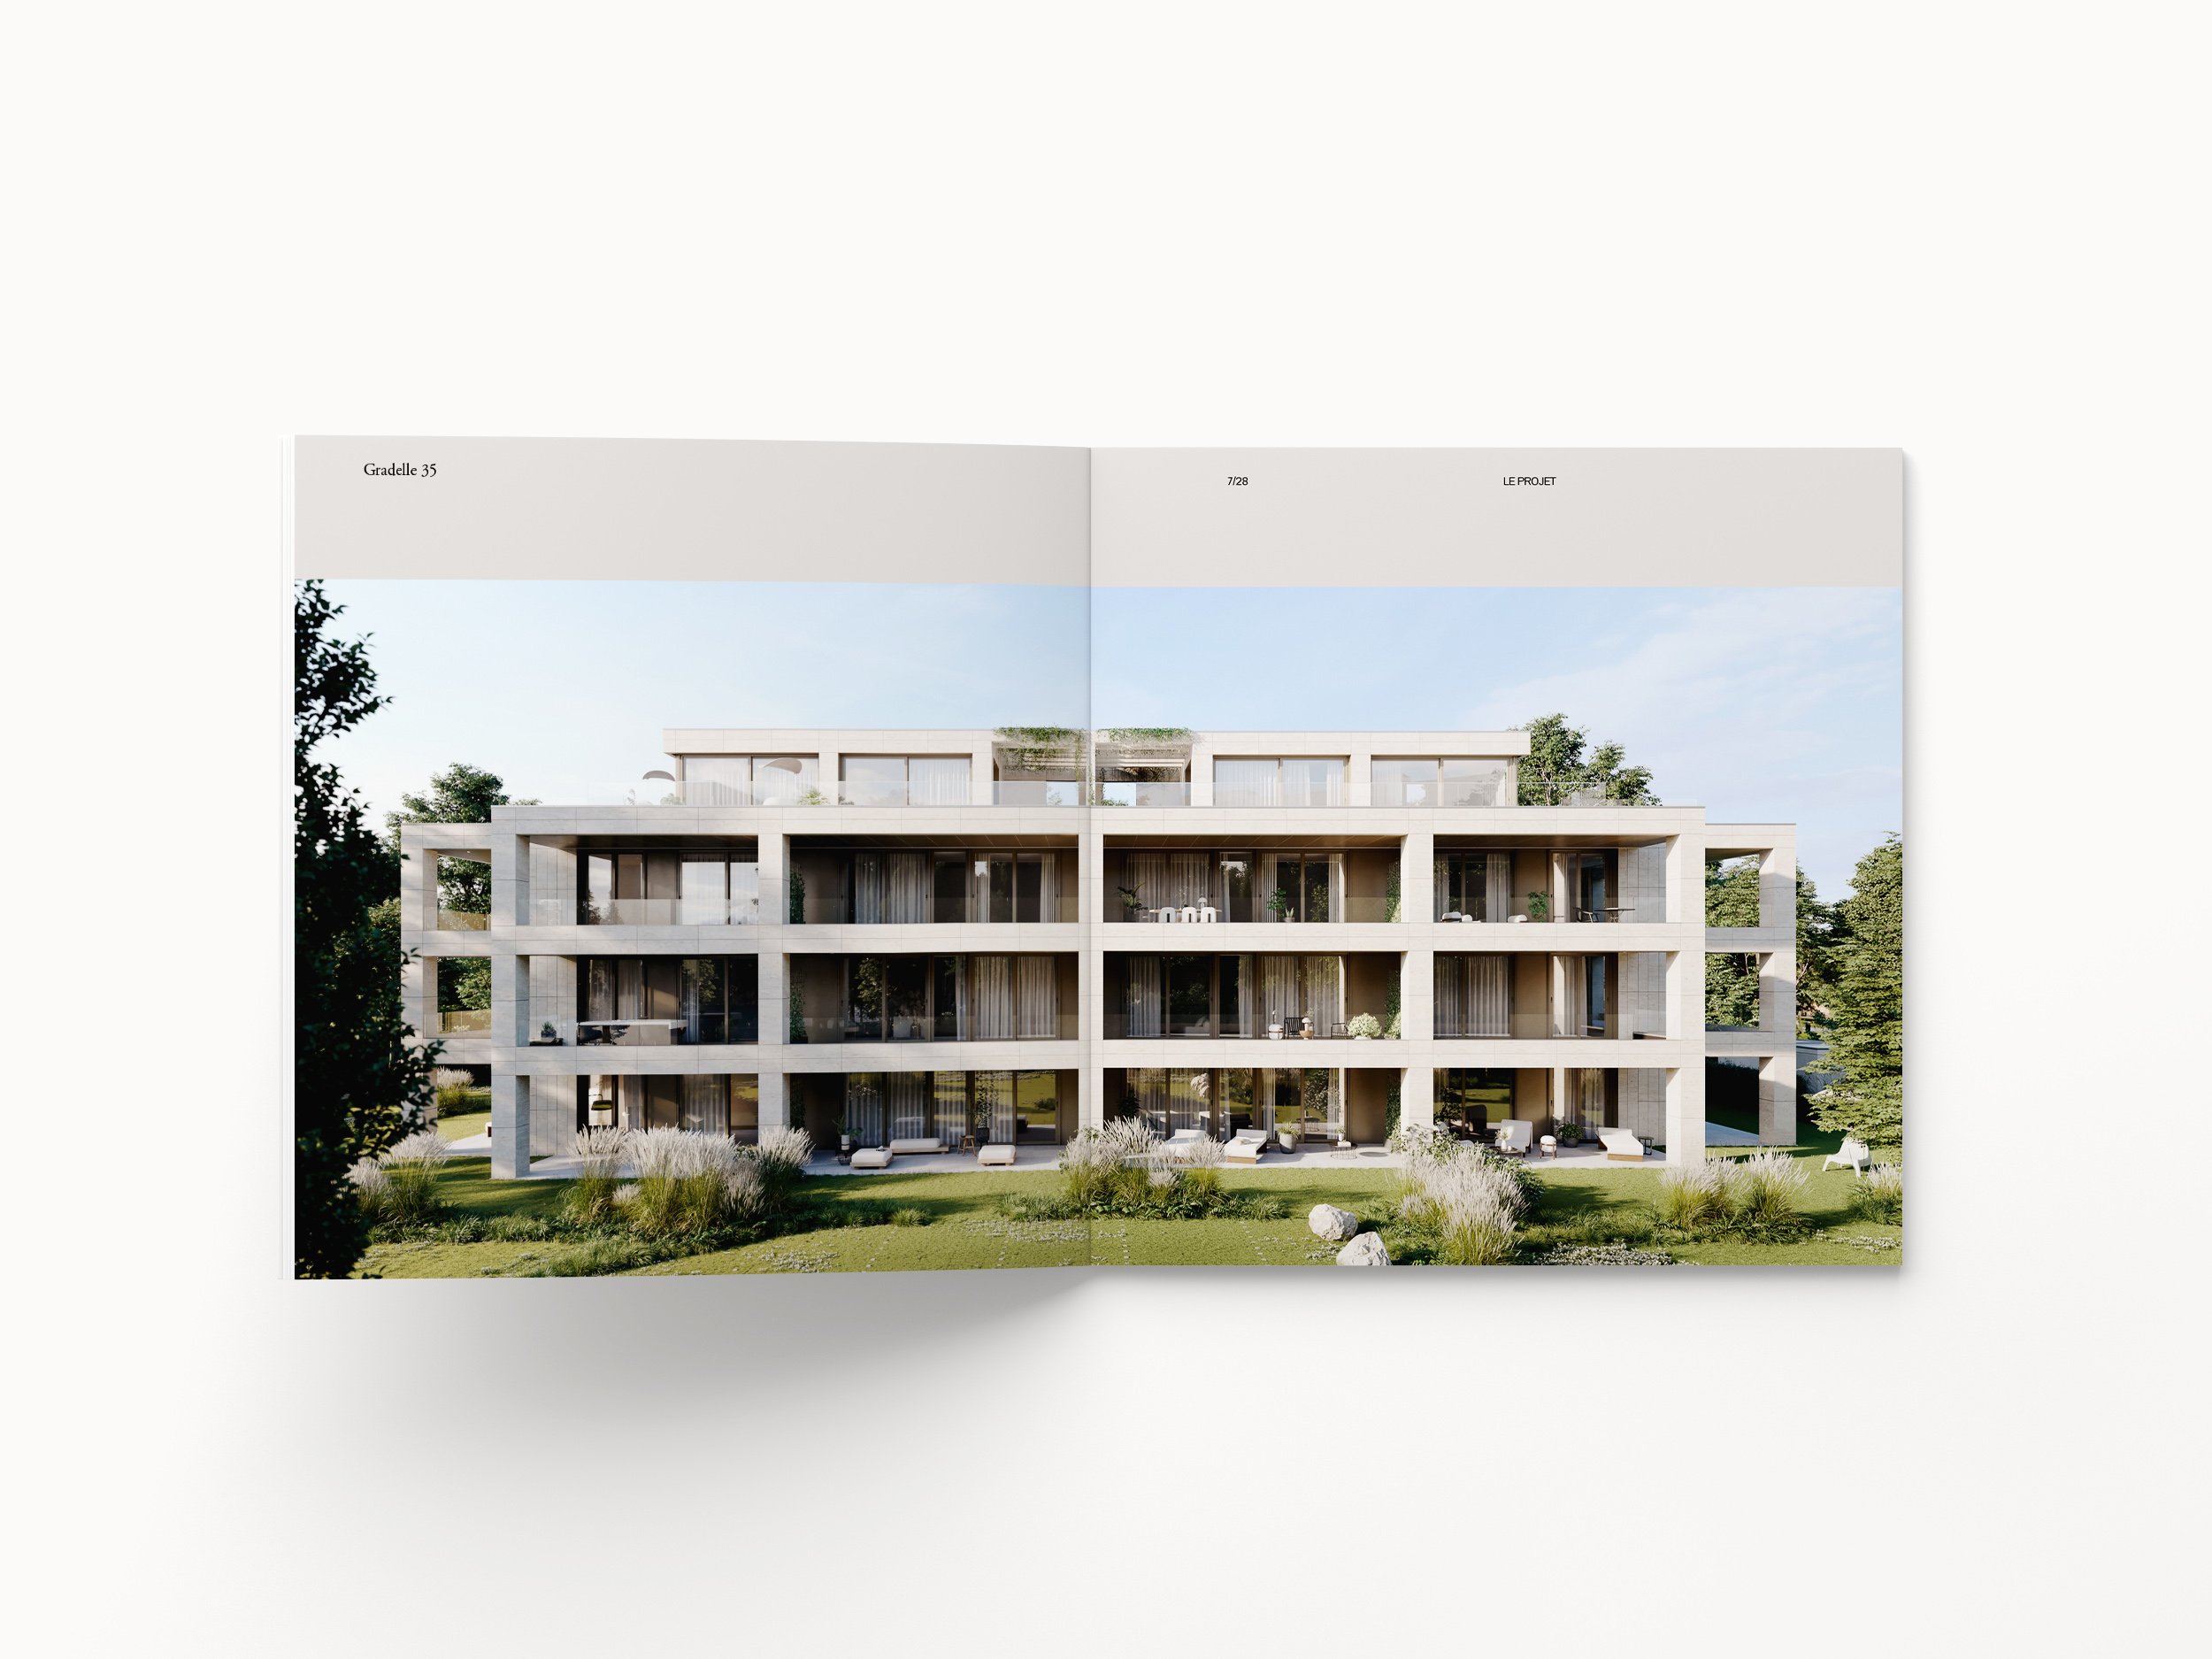 dix-sept-geneve couverture brochure promotion immobilière cologny page 3.jpg